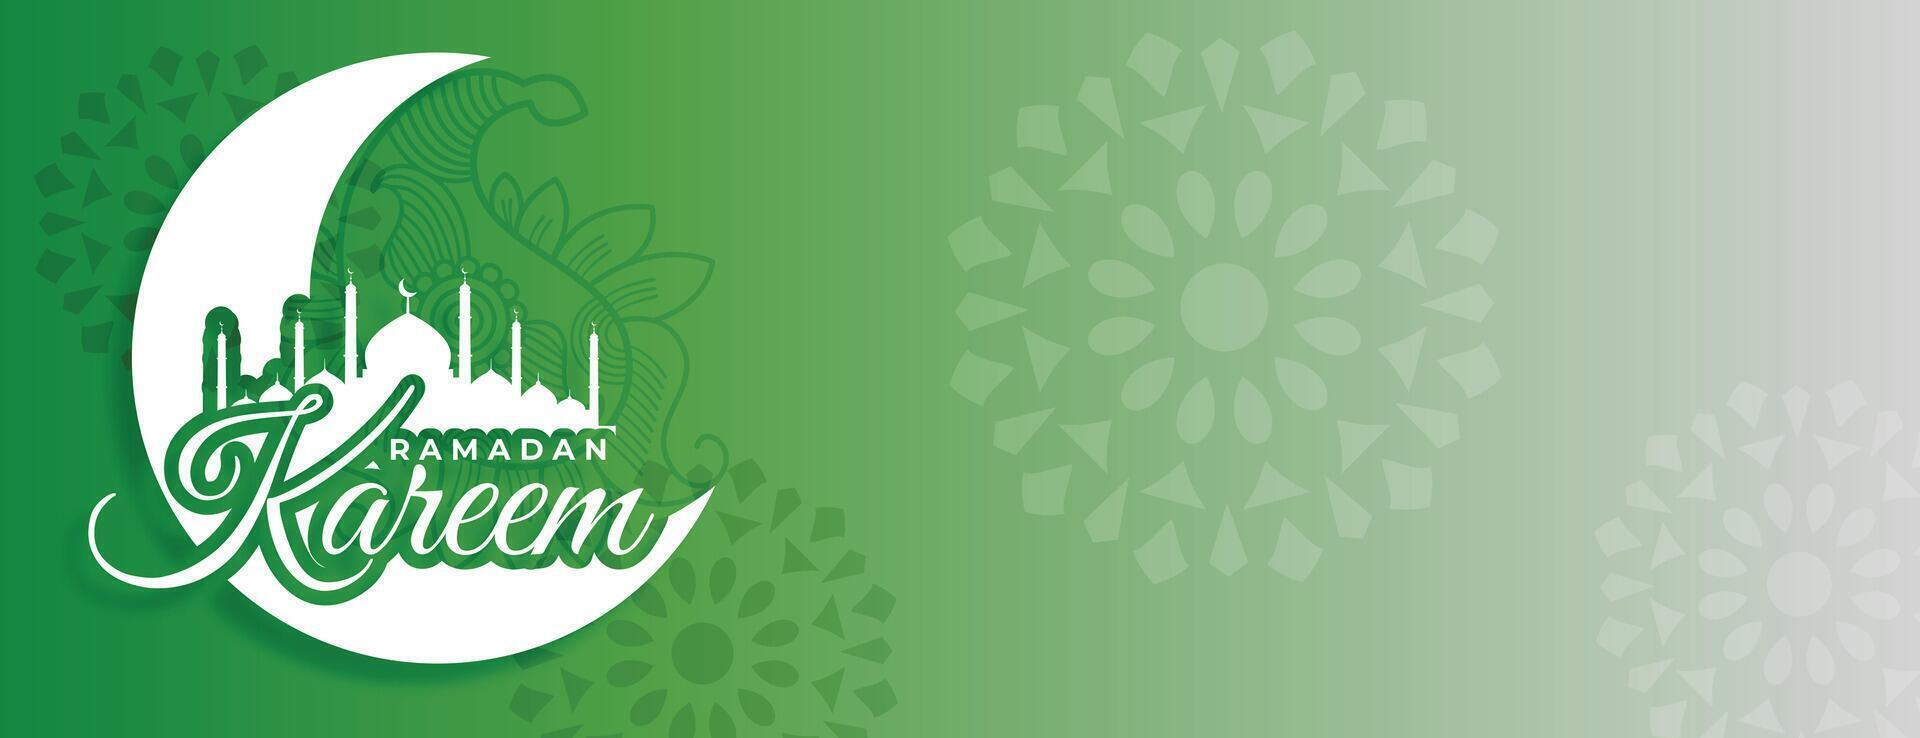 ramadan kareem grön dekorativ baner med text Plats vektor